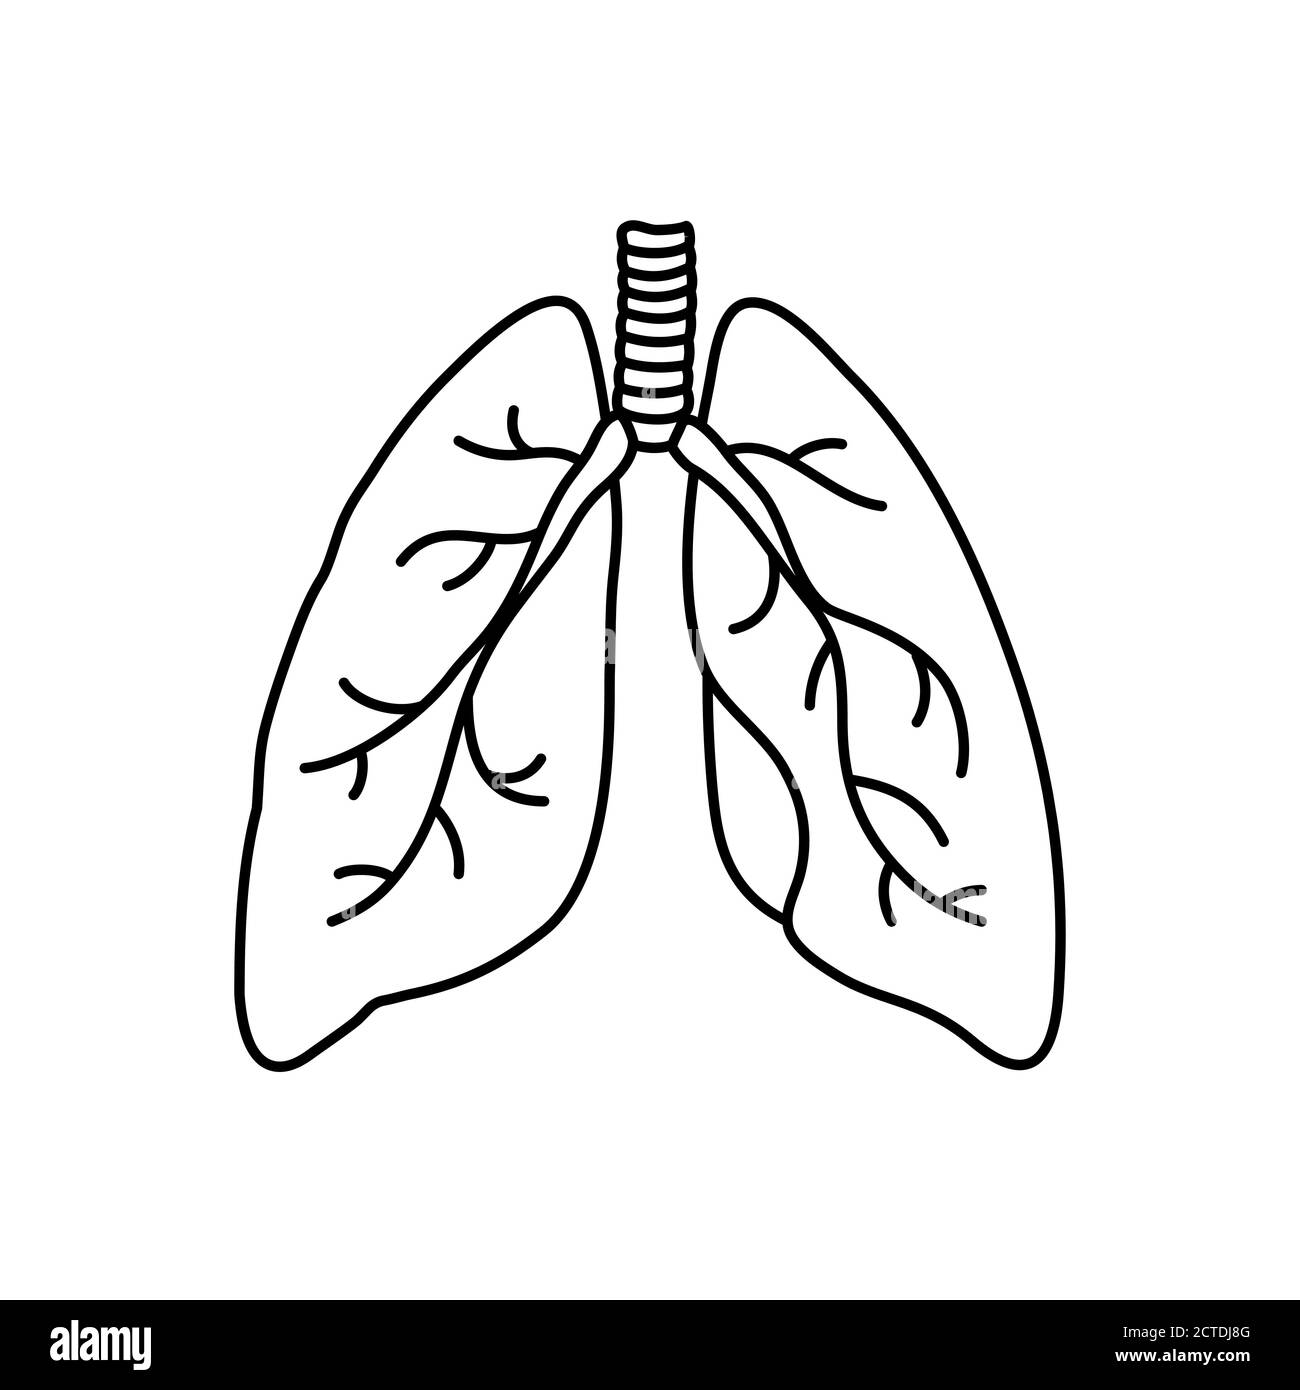 Vektorkonturdarstellung der menschlichen Lunge im flachen Stil. Symbol für innere Orgel, Logo. Anatomie, Medizin Konzept. Gesundheitswesen. Isoliert auf weißem Hintergrund. Stock Vektor